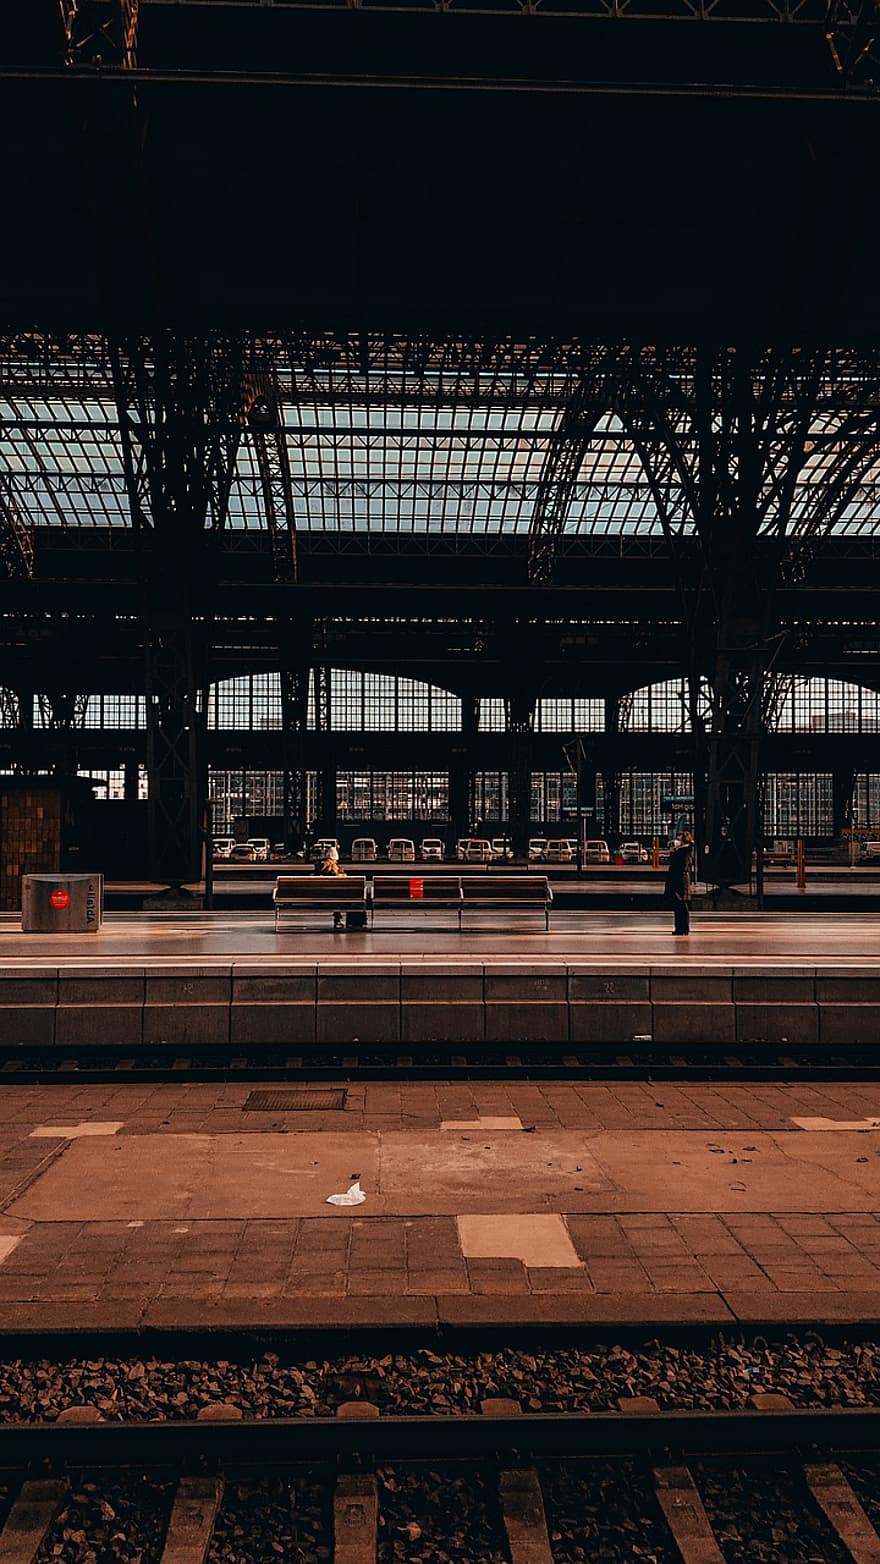 Германия, Саксония, железнодорожная платформа, железнодорожная станция, в помещении, архитектура, транспорт, построенная структура, путешествовать, современный, вид транспорта